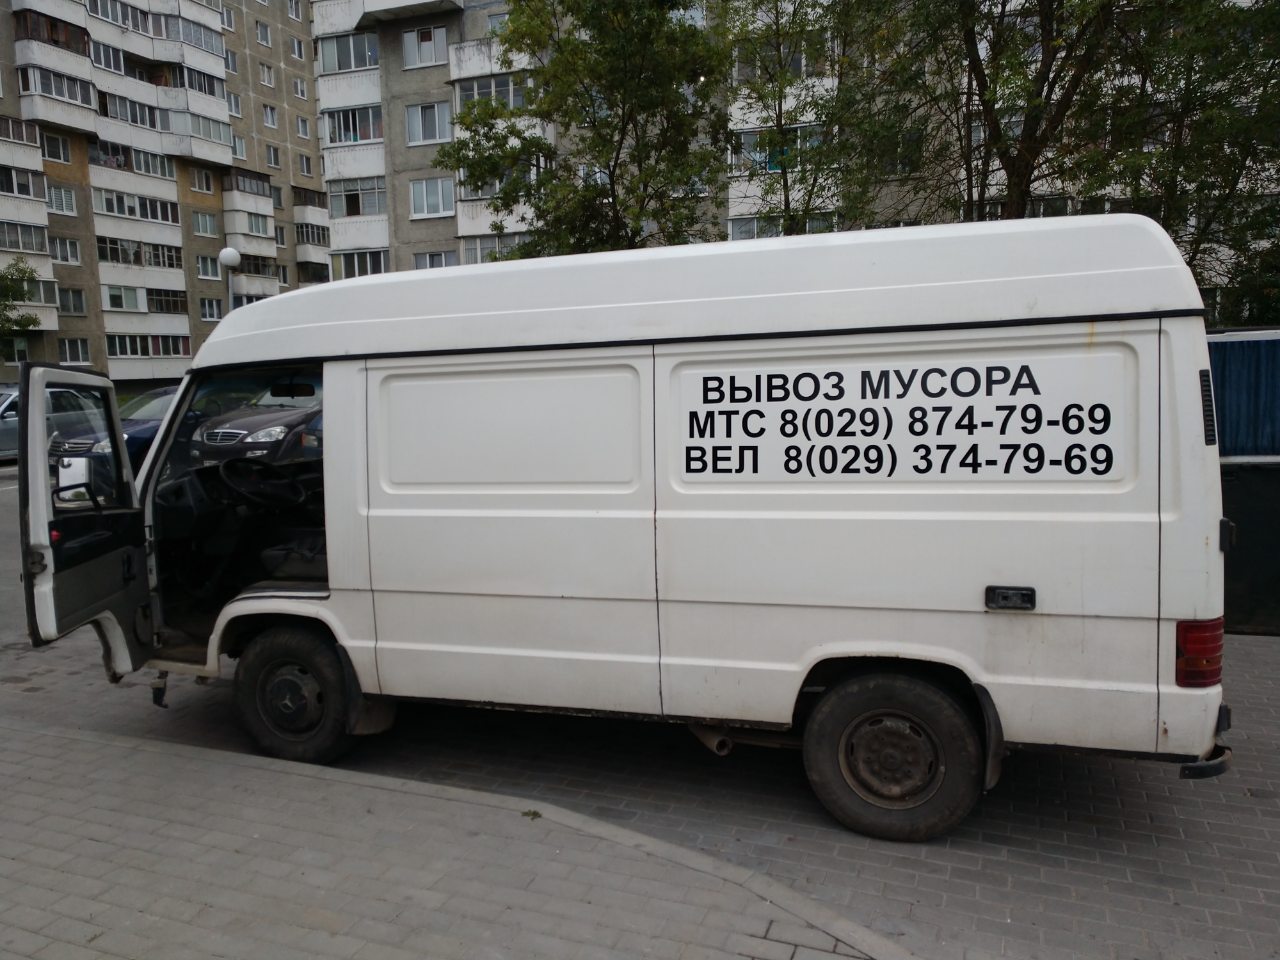 Вывоз строительного мусора Ремонт квартиры и дизайн интерьера в Минске! Бесплатный выезд на замер и расчет точной сметы. 